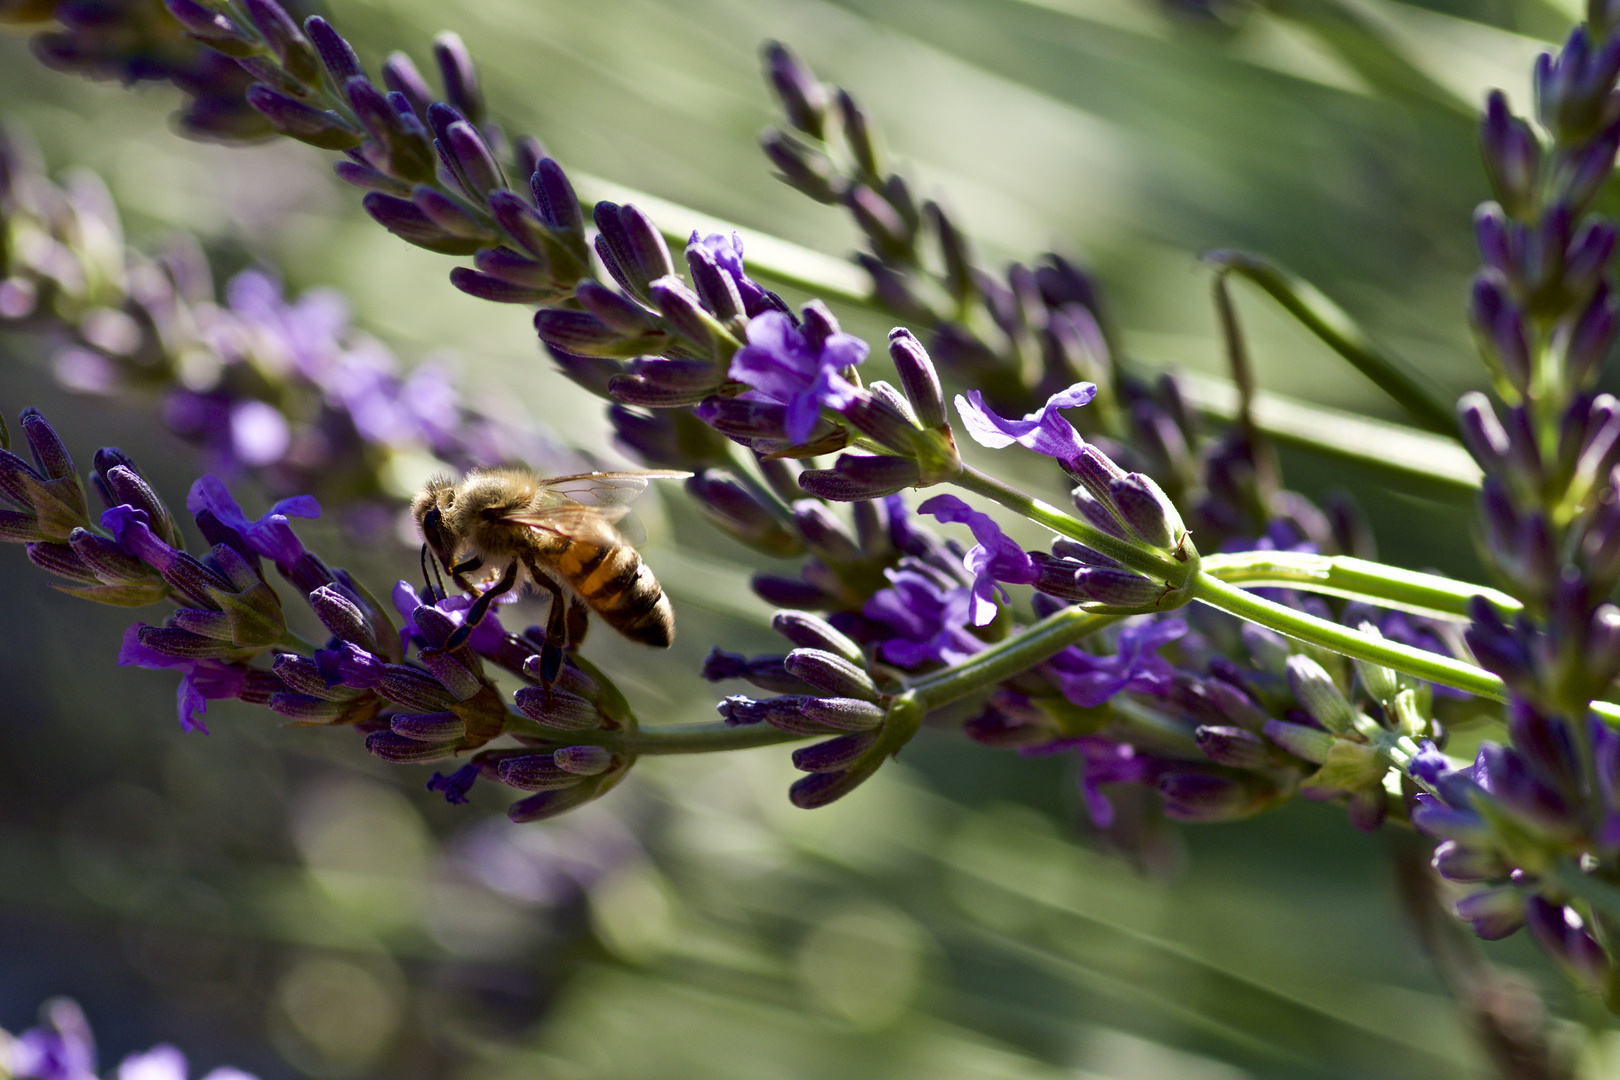 Lavendel mit Honigbiene